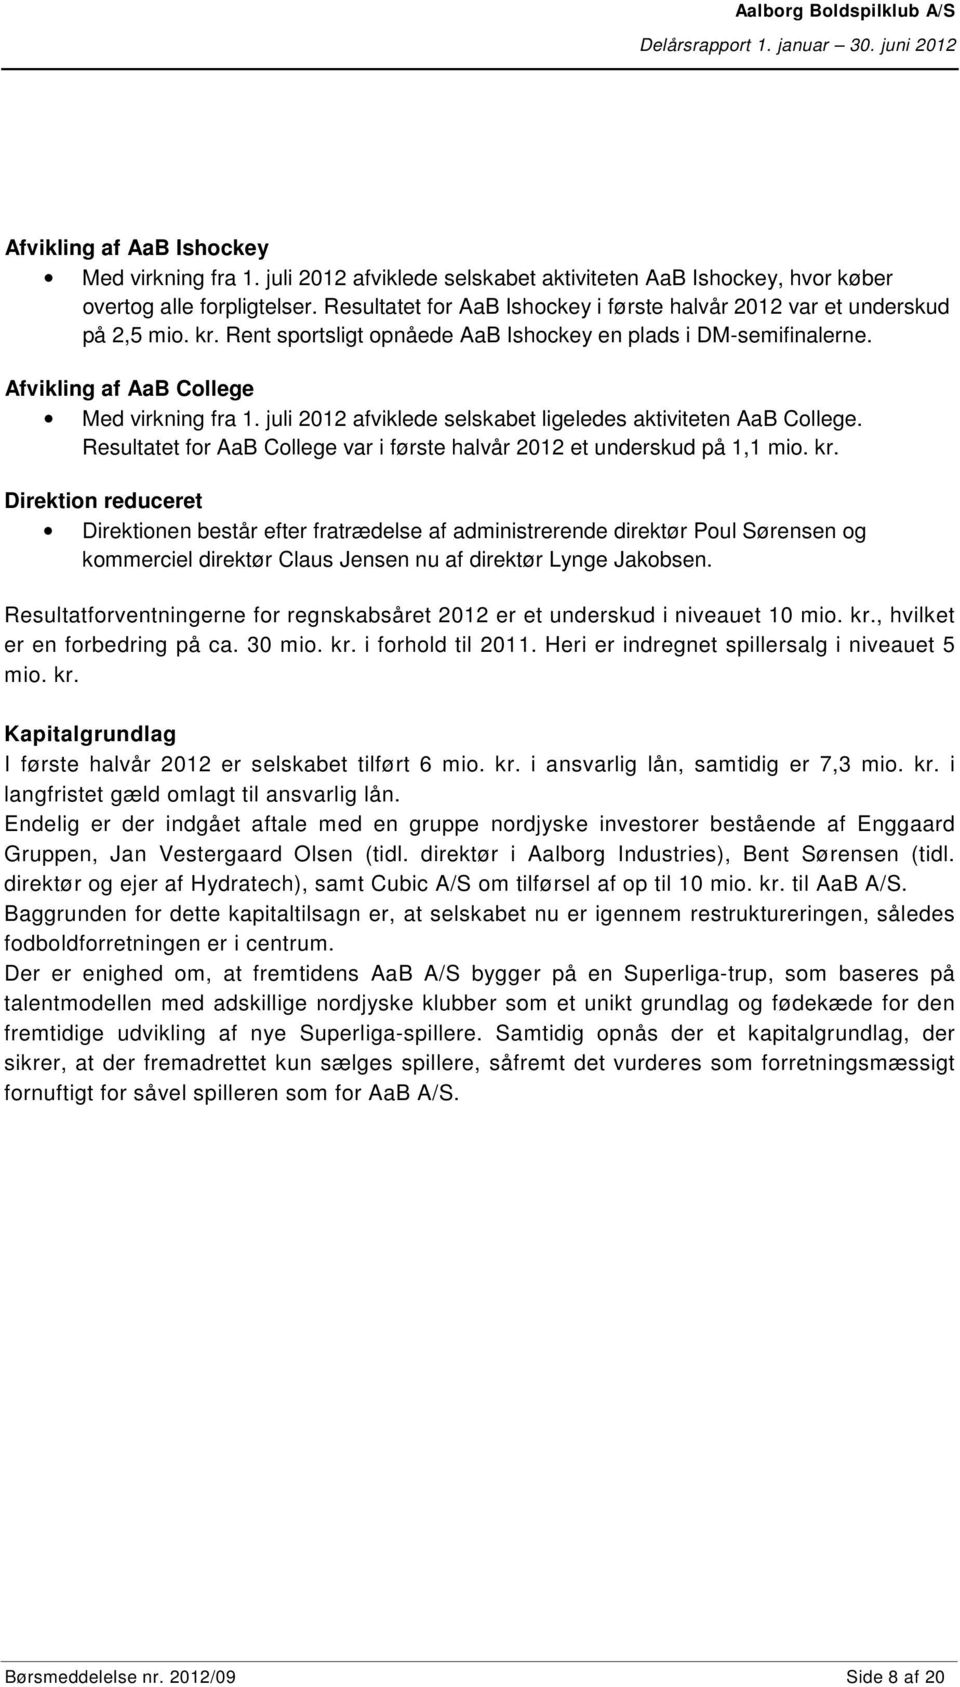 juli 2012 afviklede selskabet ligeledes aktiviteten AaB College. Resultatet for AaB College var i første halvår 2012 et underskud på 1,1 mio. kr.